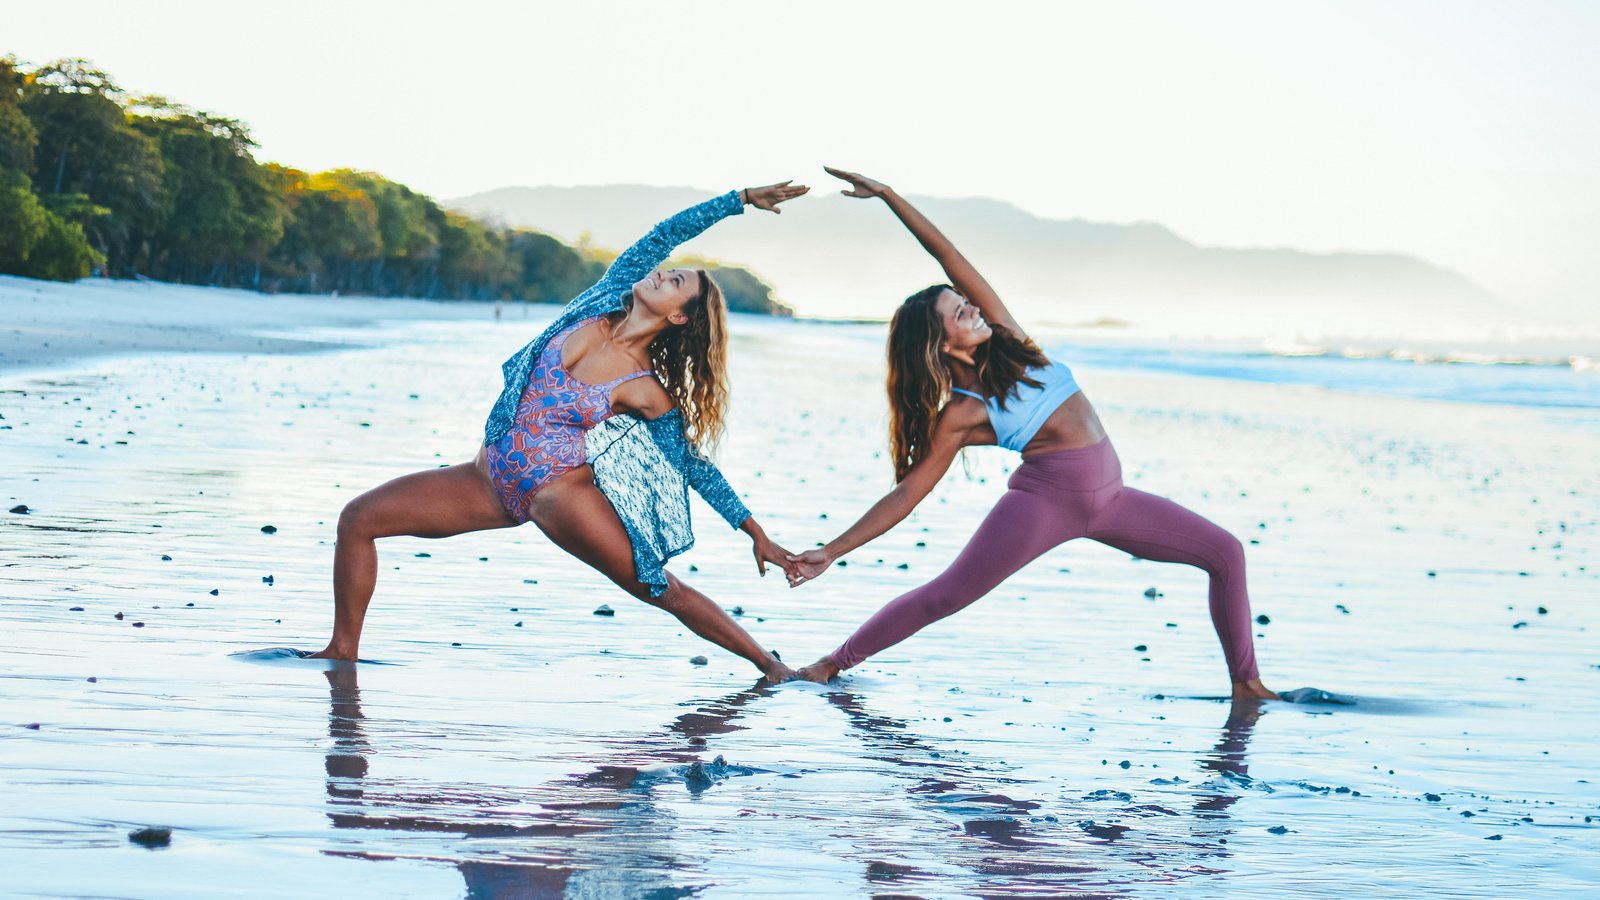 NAKED YOGA PANT – Yoga Academy International